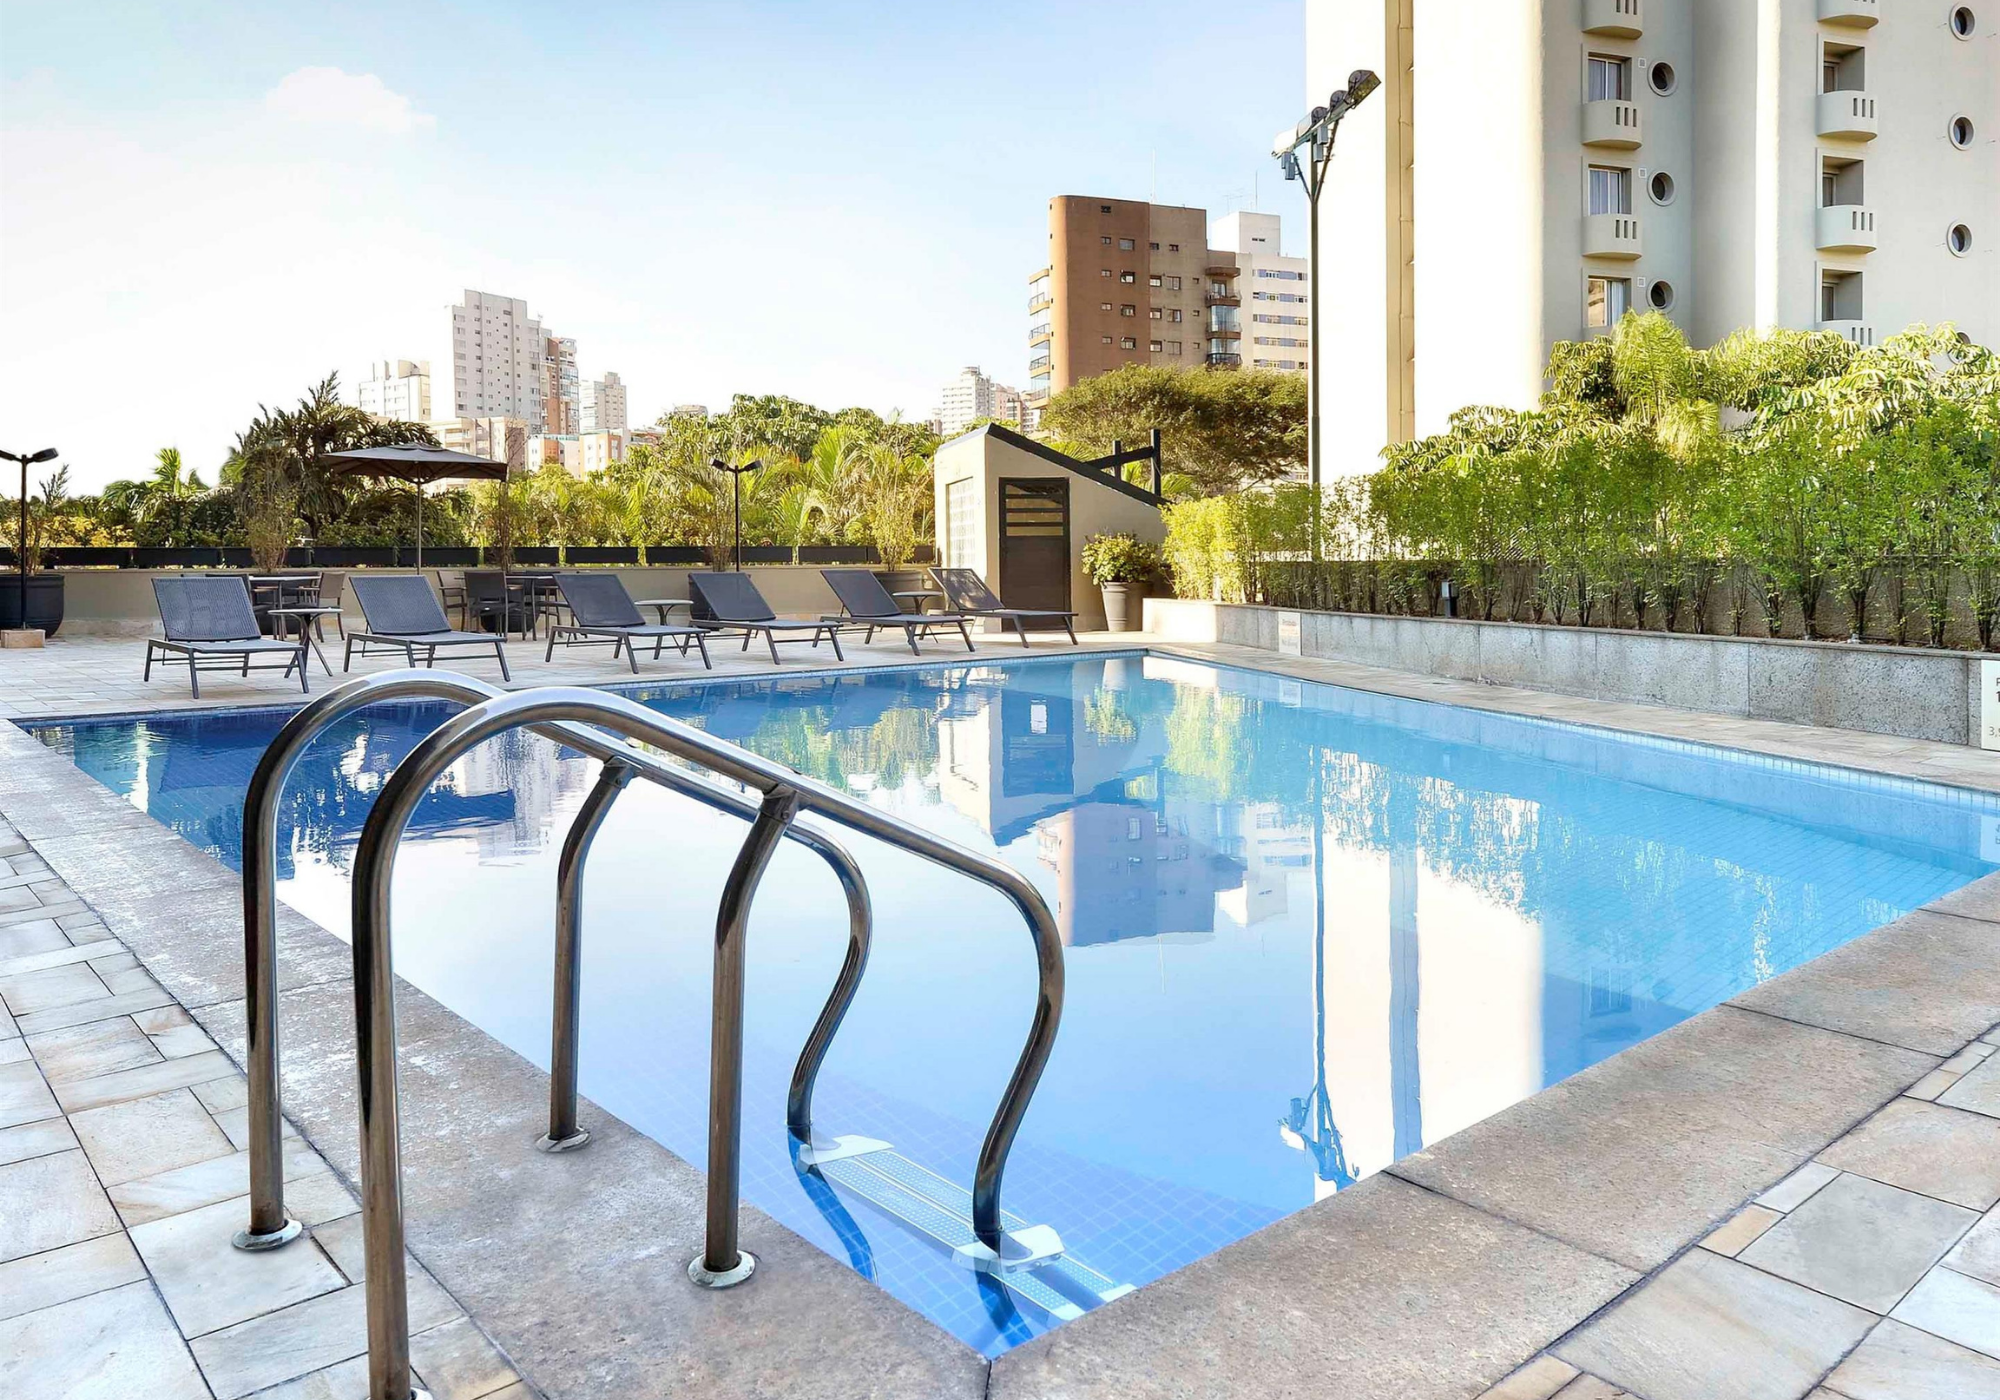 Vila Monumento terá clube de praia com Day Use em piscinas •  IpirangaFeelings